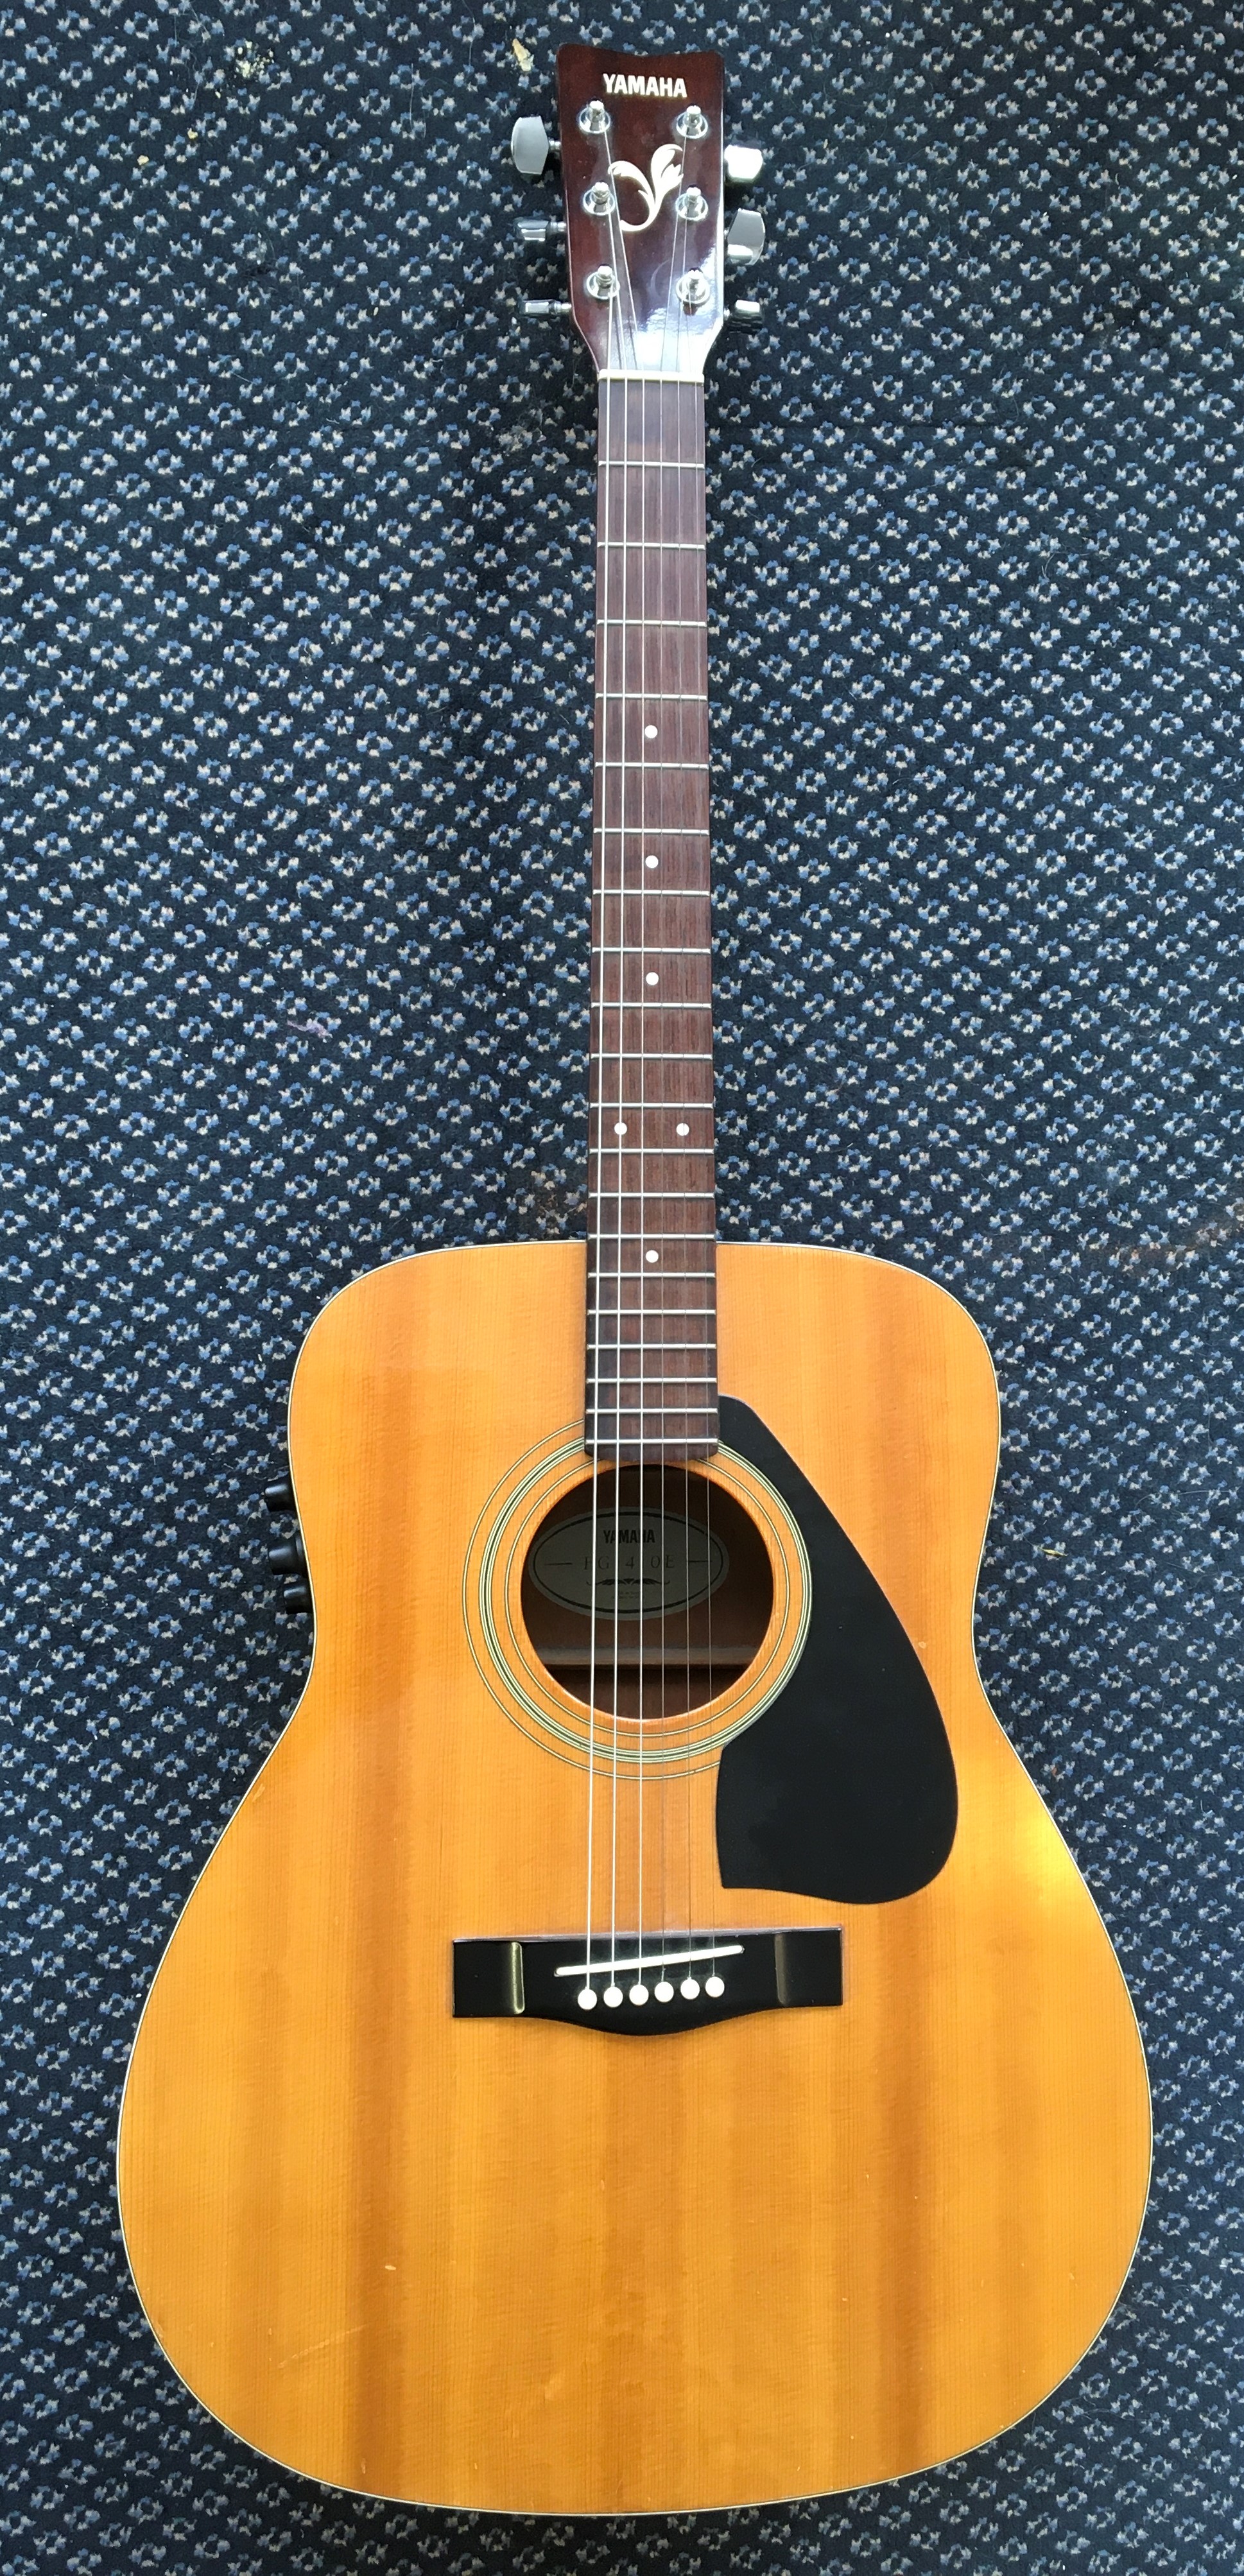 A Yamaha EG-410E acoustic guitar.